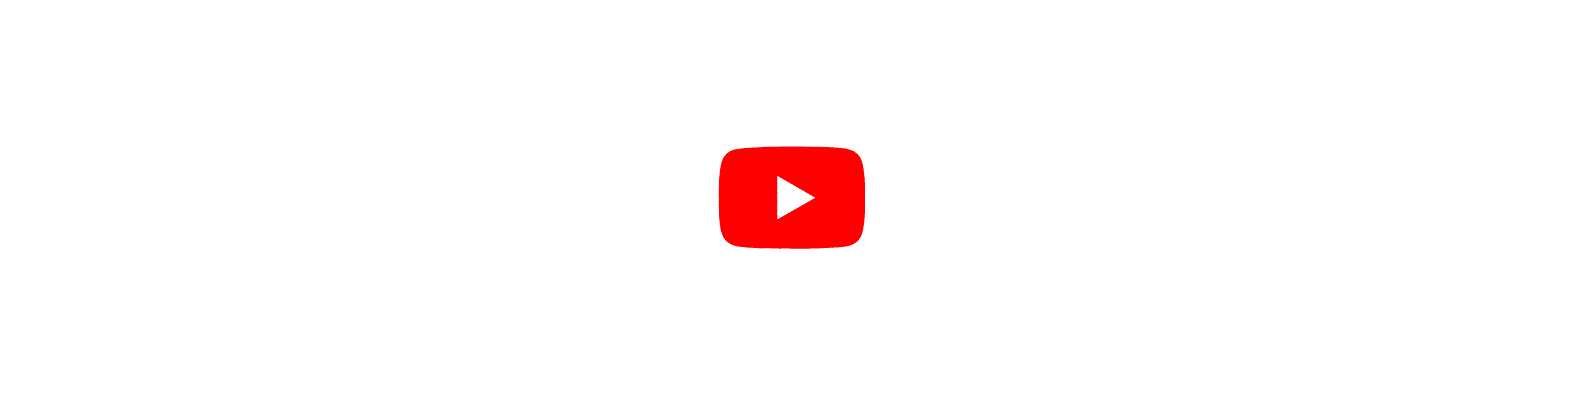 Intro_Youtube